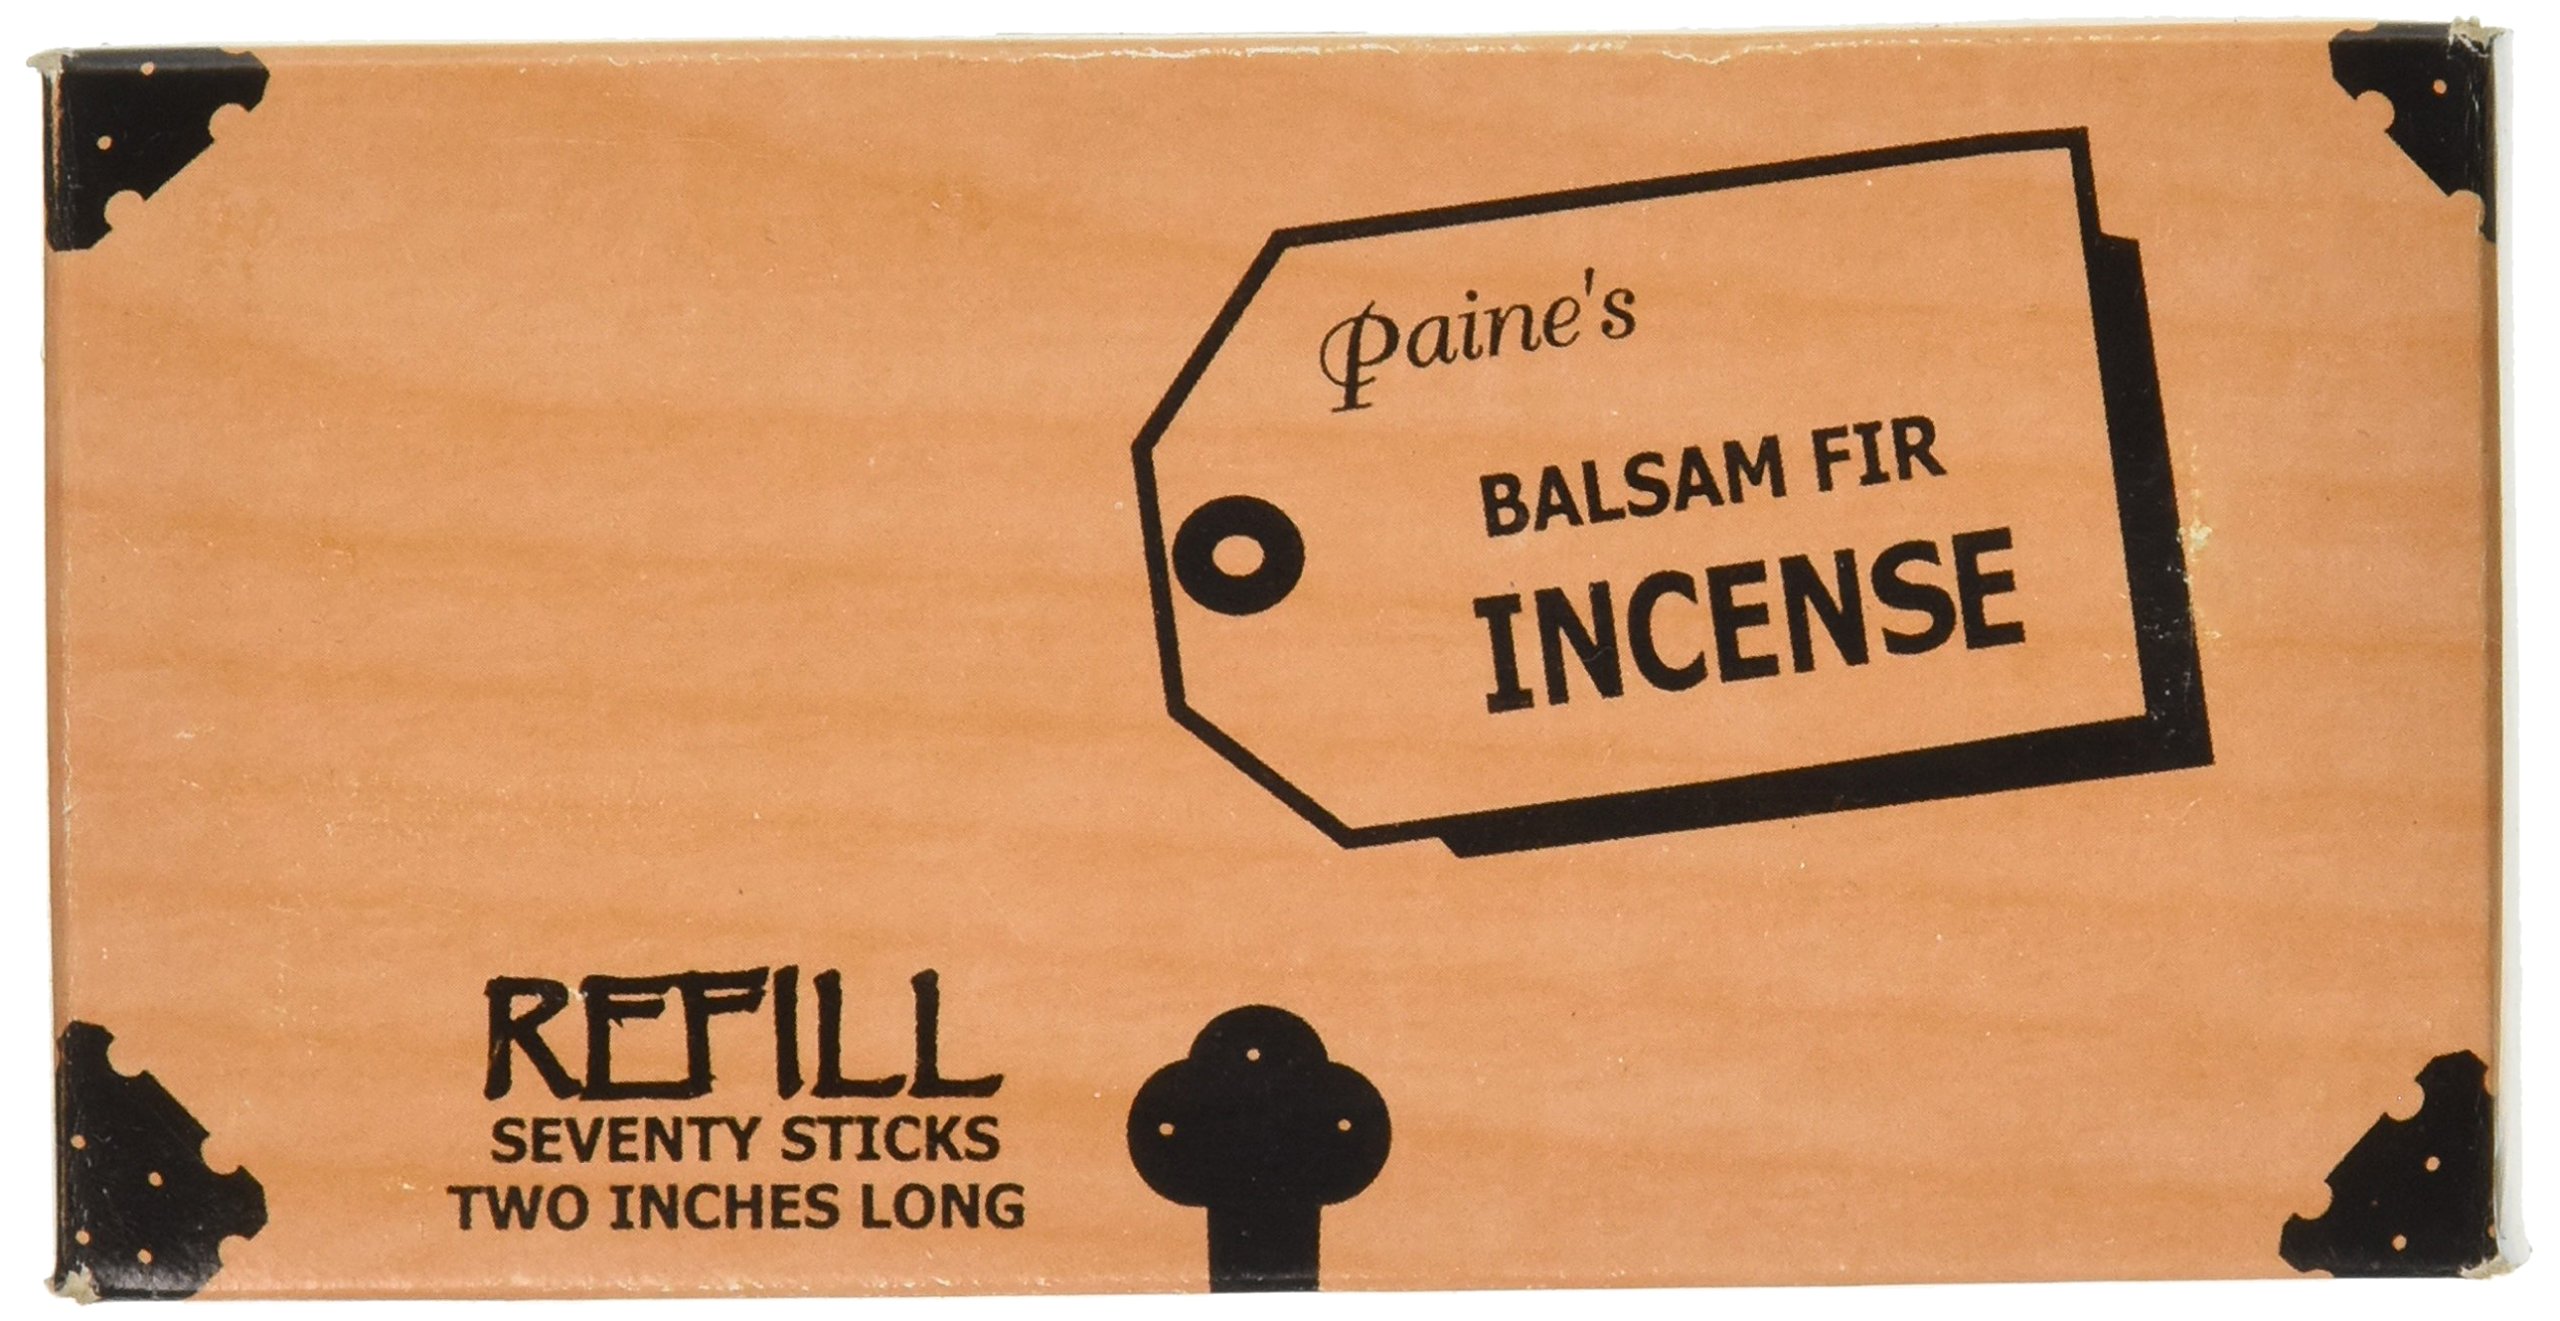 Paine Räucherstäbchen Company Paine 's Balsam Fir Räucherstäbchen – 70 Sticks Refill – Zwei Zoll lang